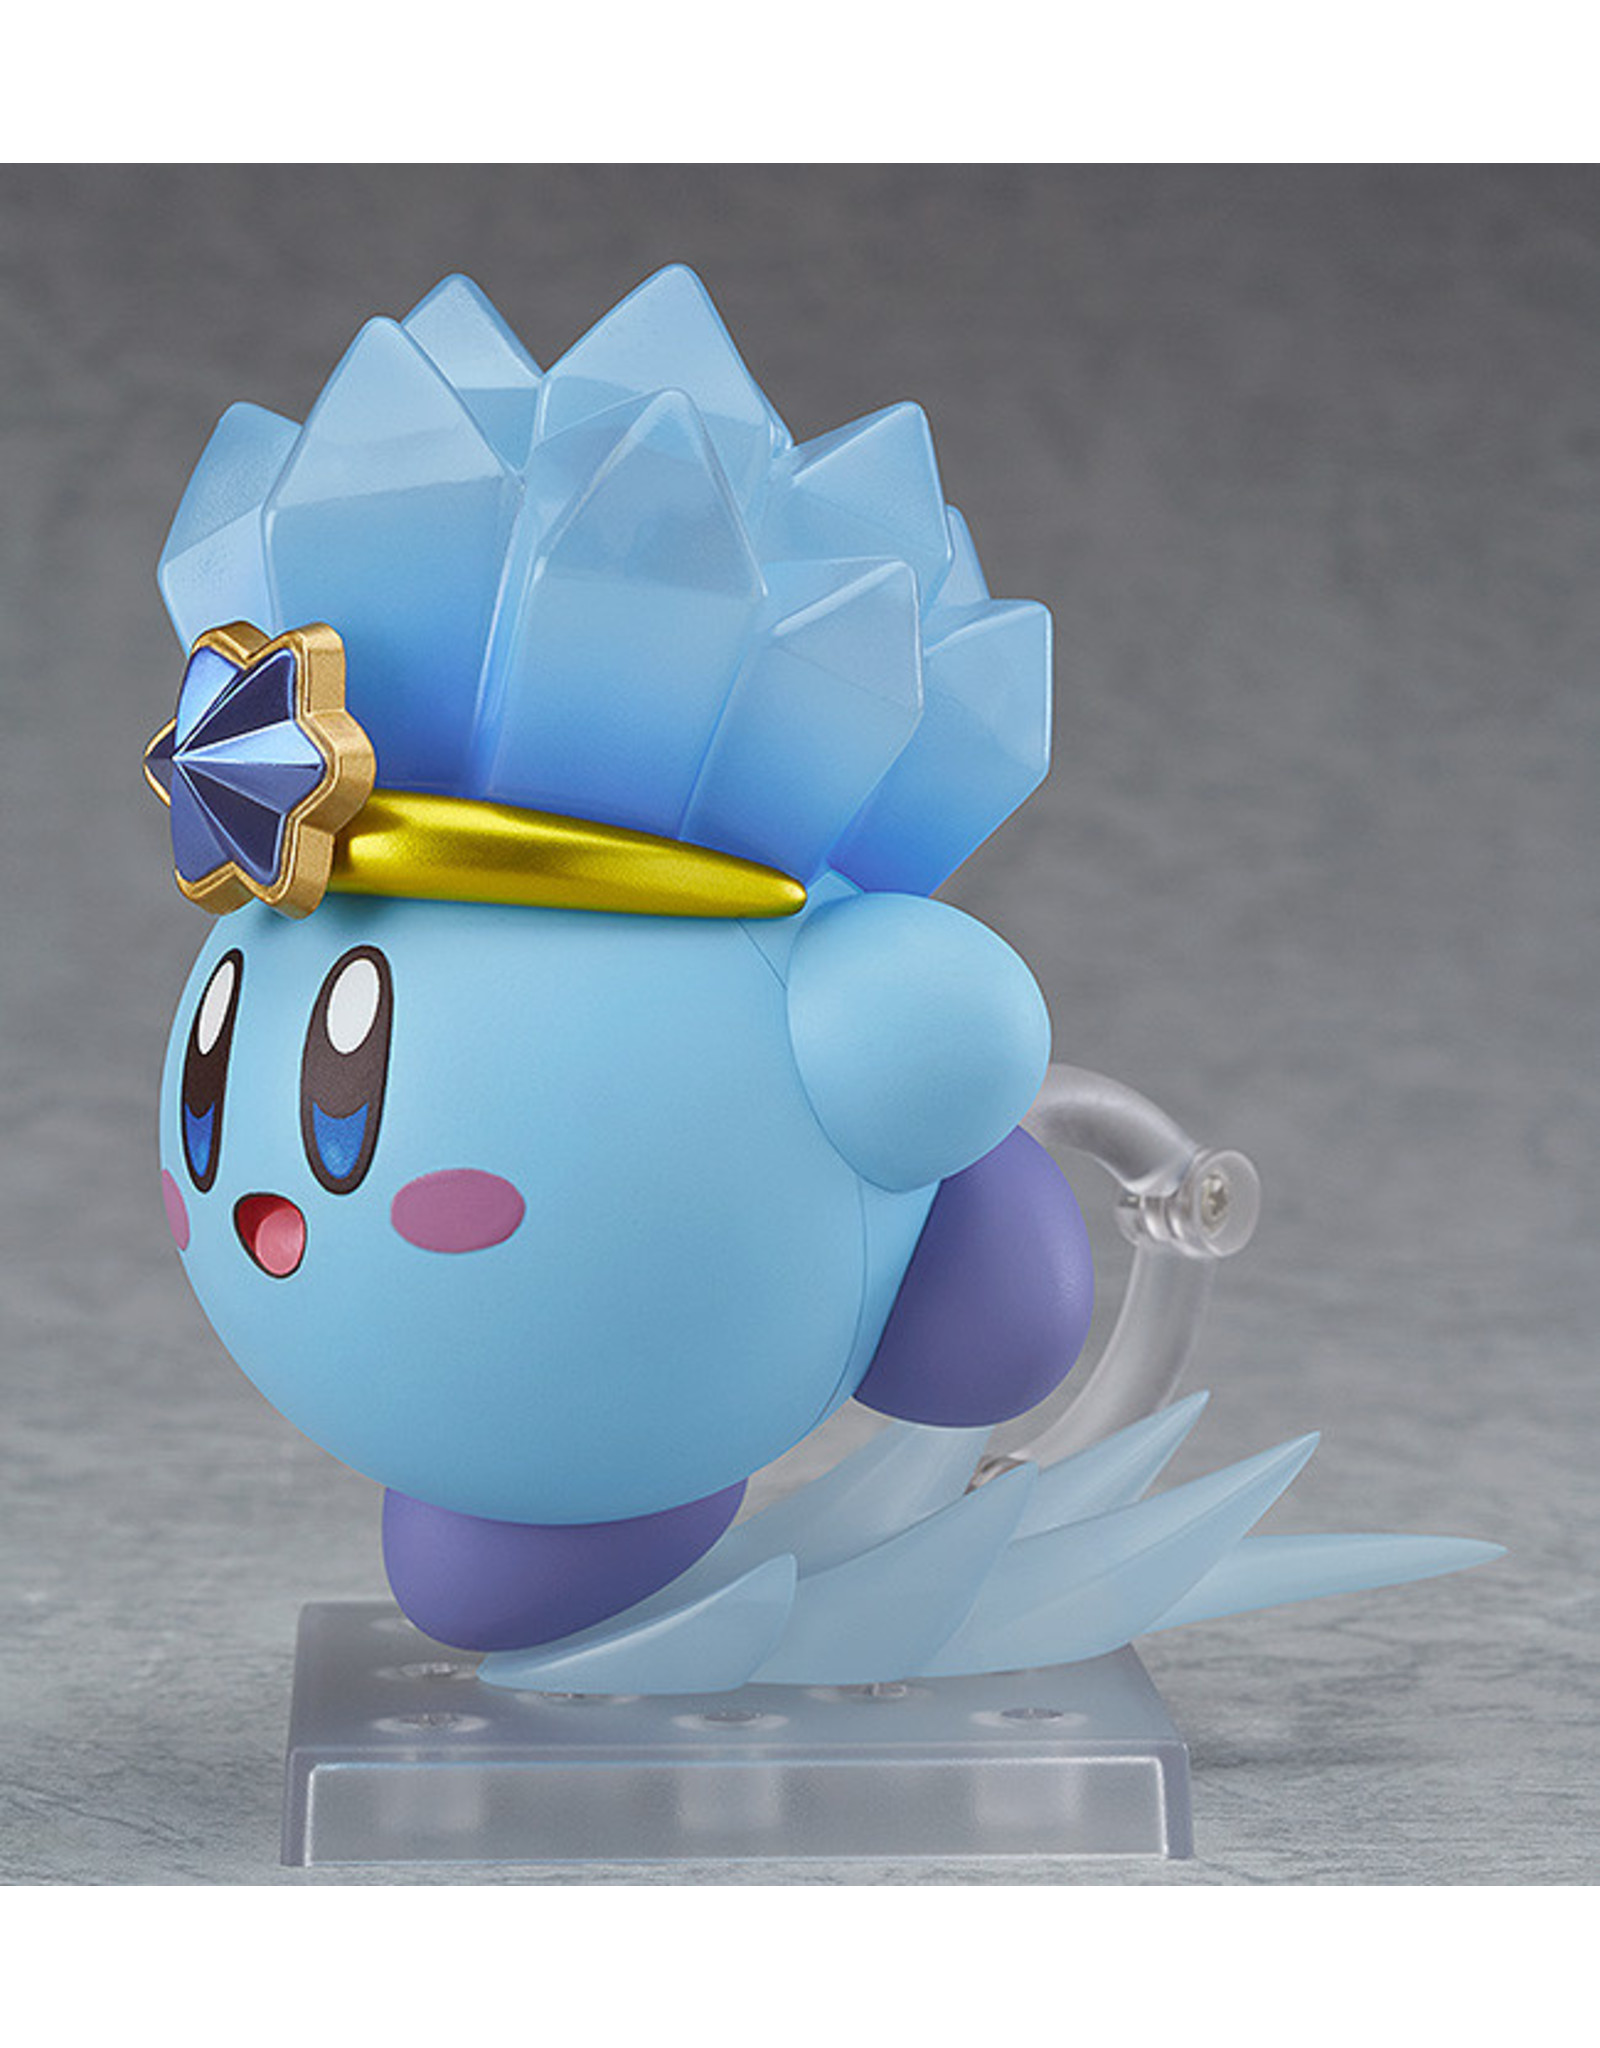 Nendoroid #786 Ice Kirby